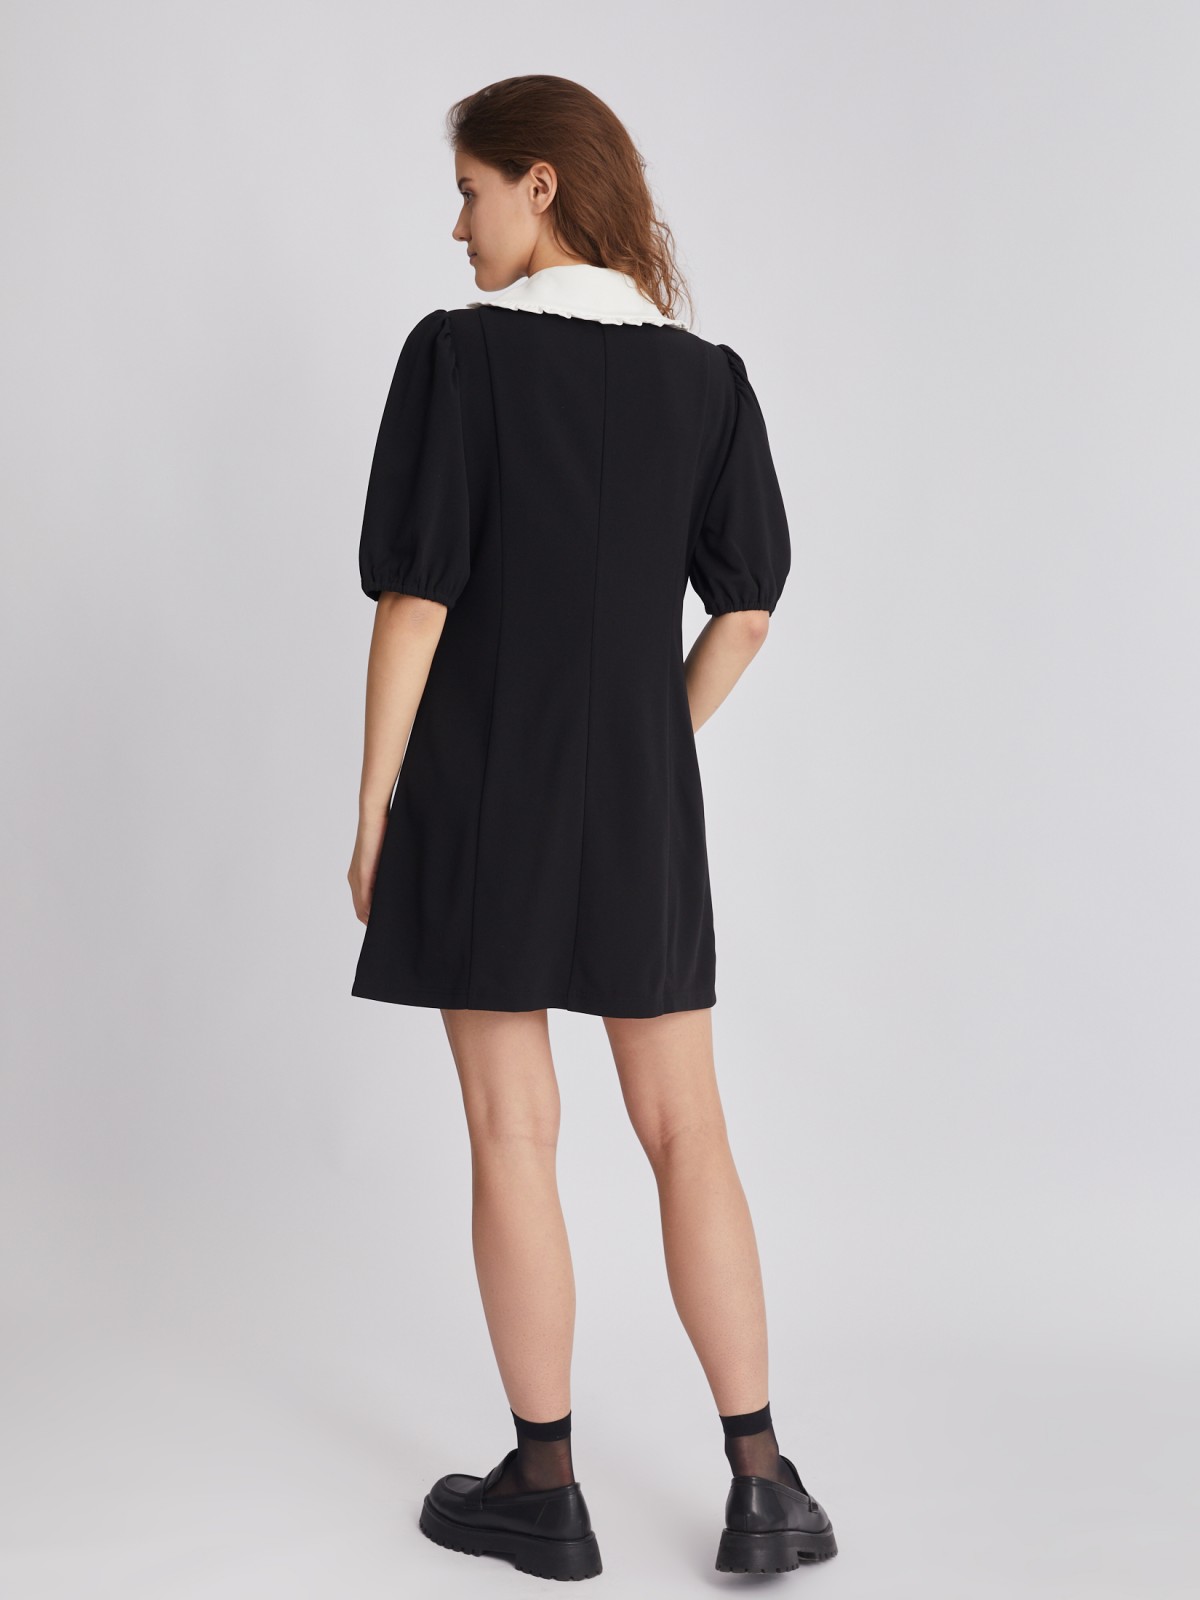 Платье длины мини с акцентным воротником zolla 223318159121, цвет черный, размер XS - фото 6